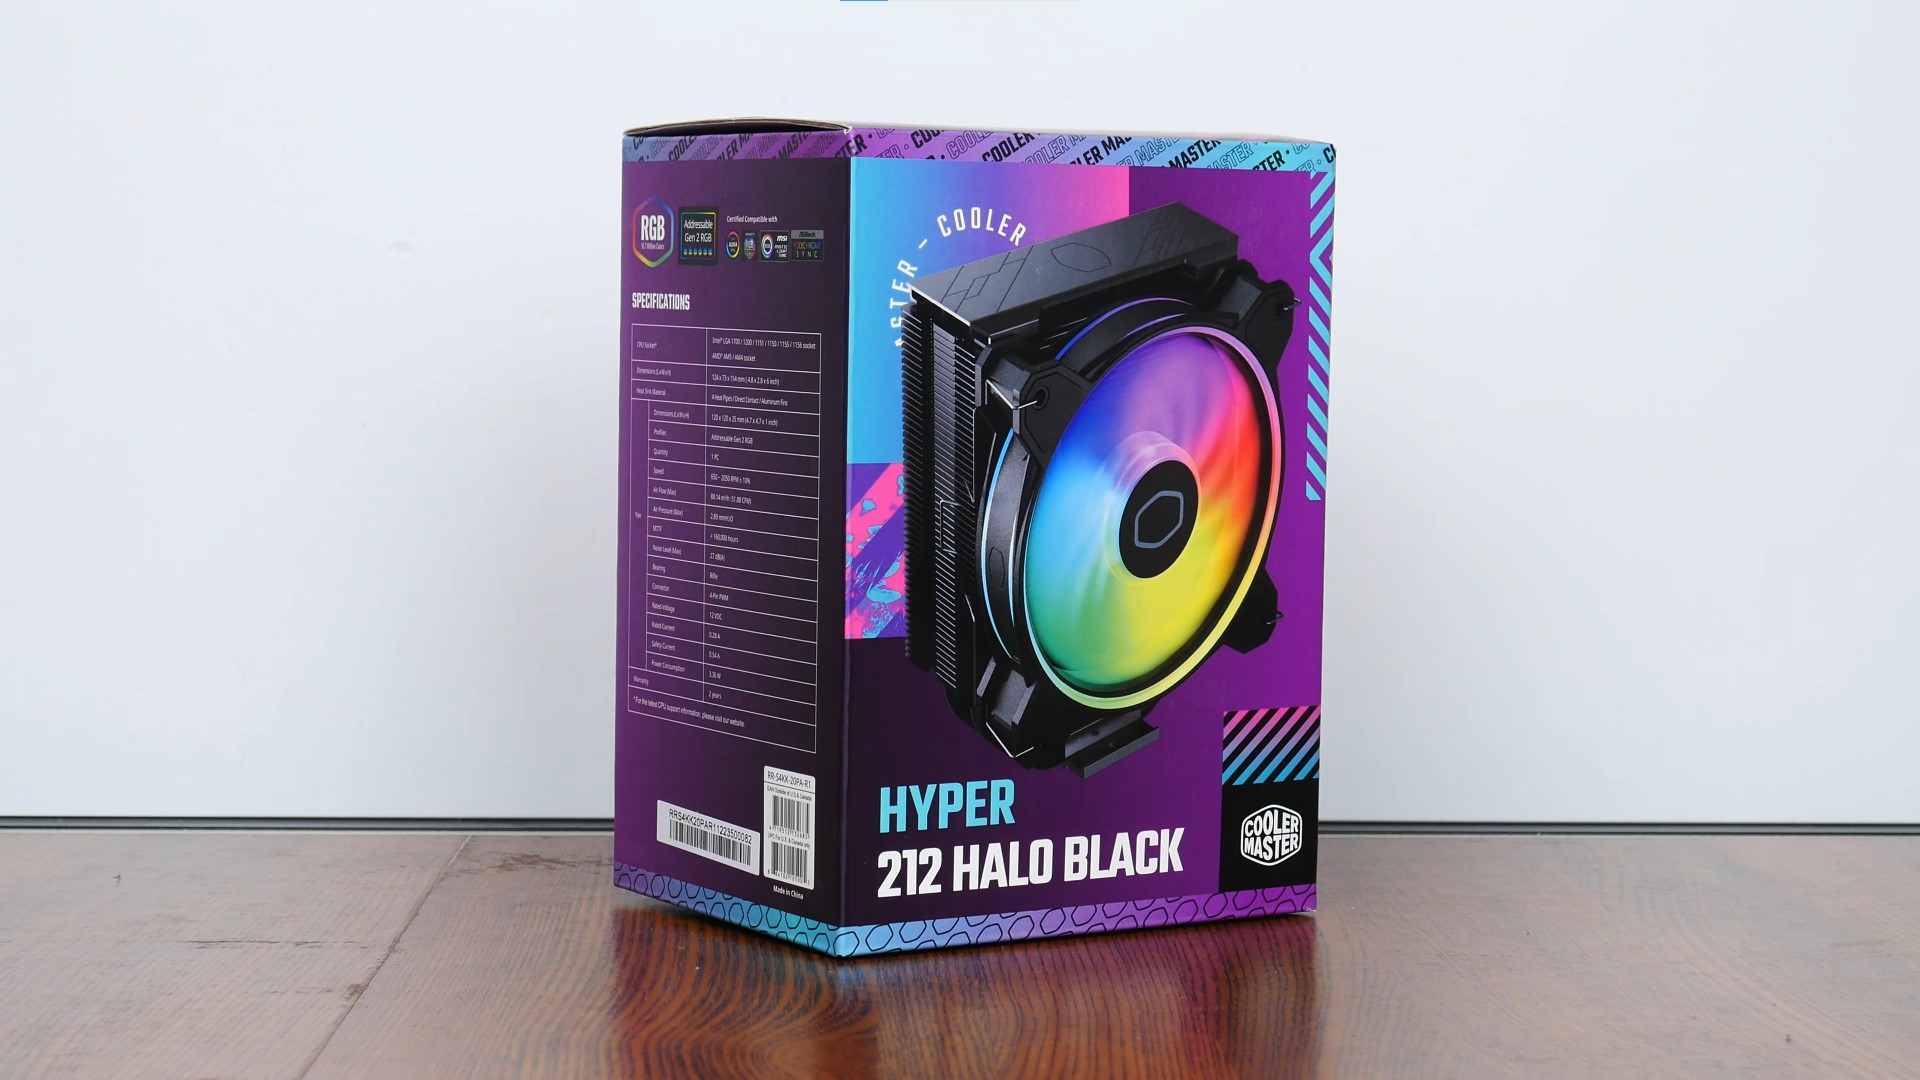 Cooler Master Hyper 212 Halo Black Packaging (Front)